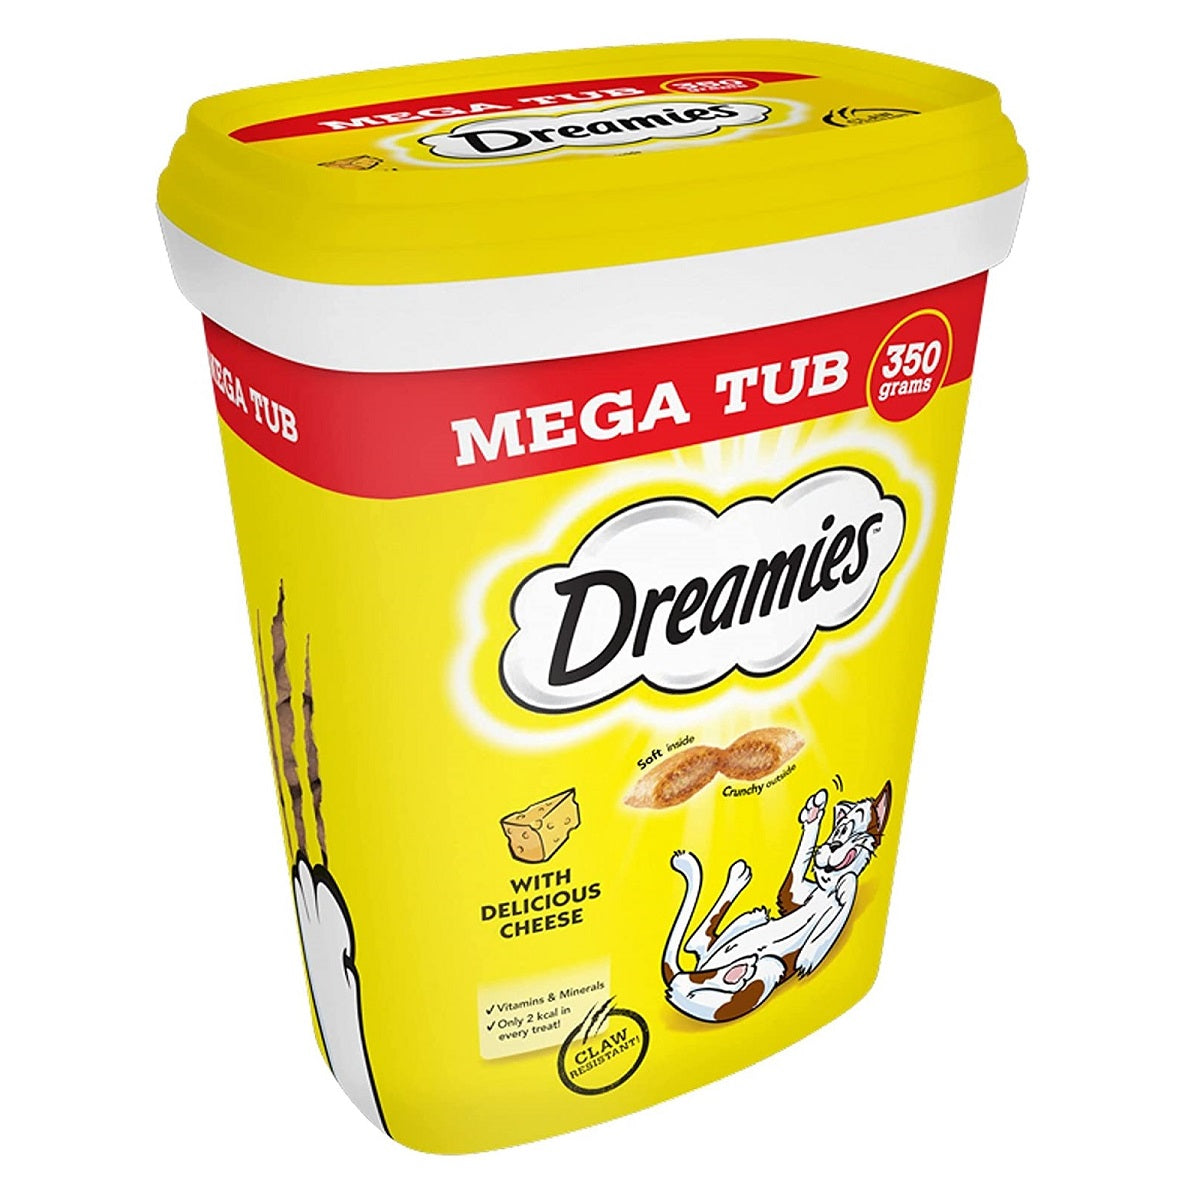 Dreamies - Mega Tub (350g)